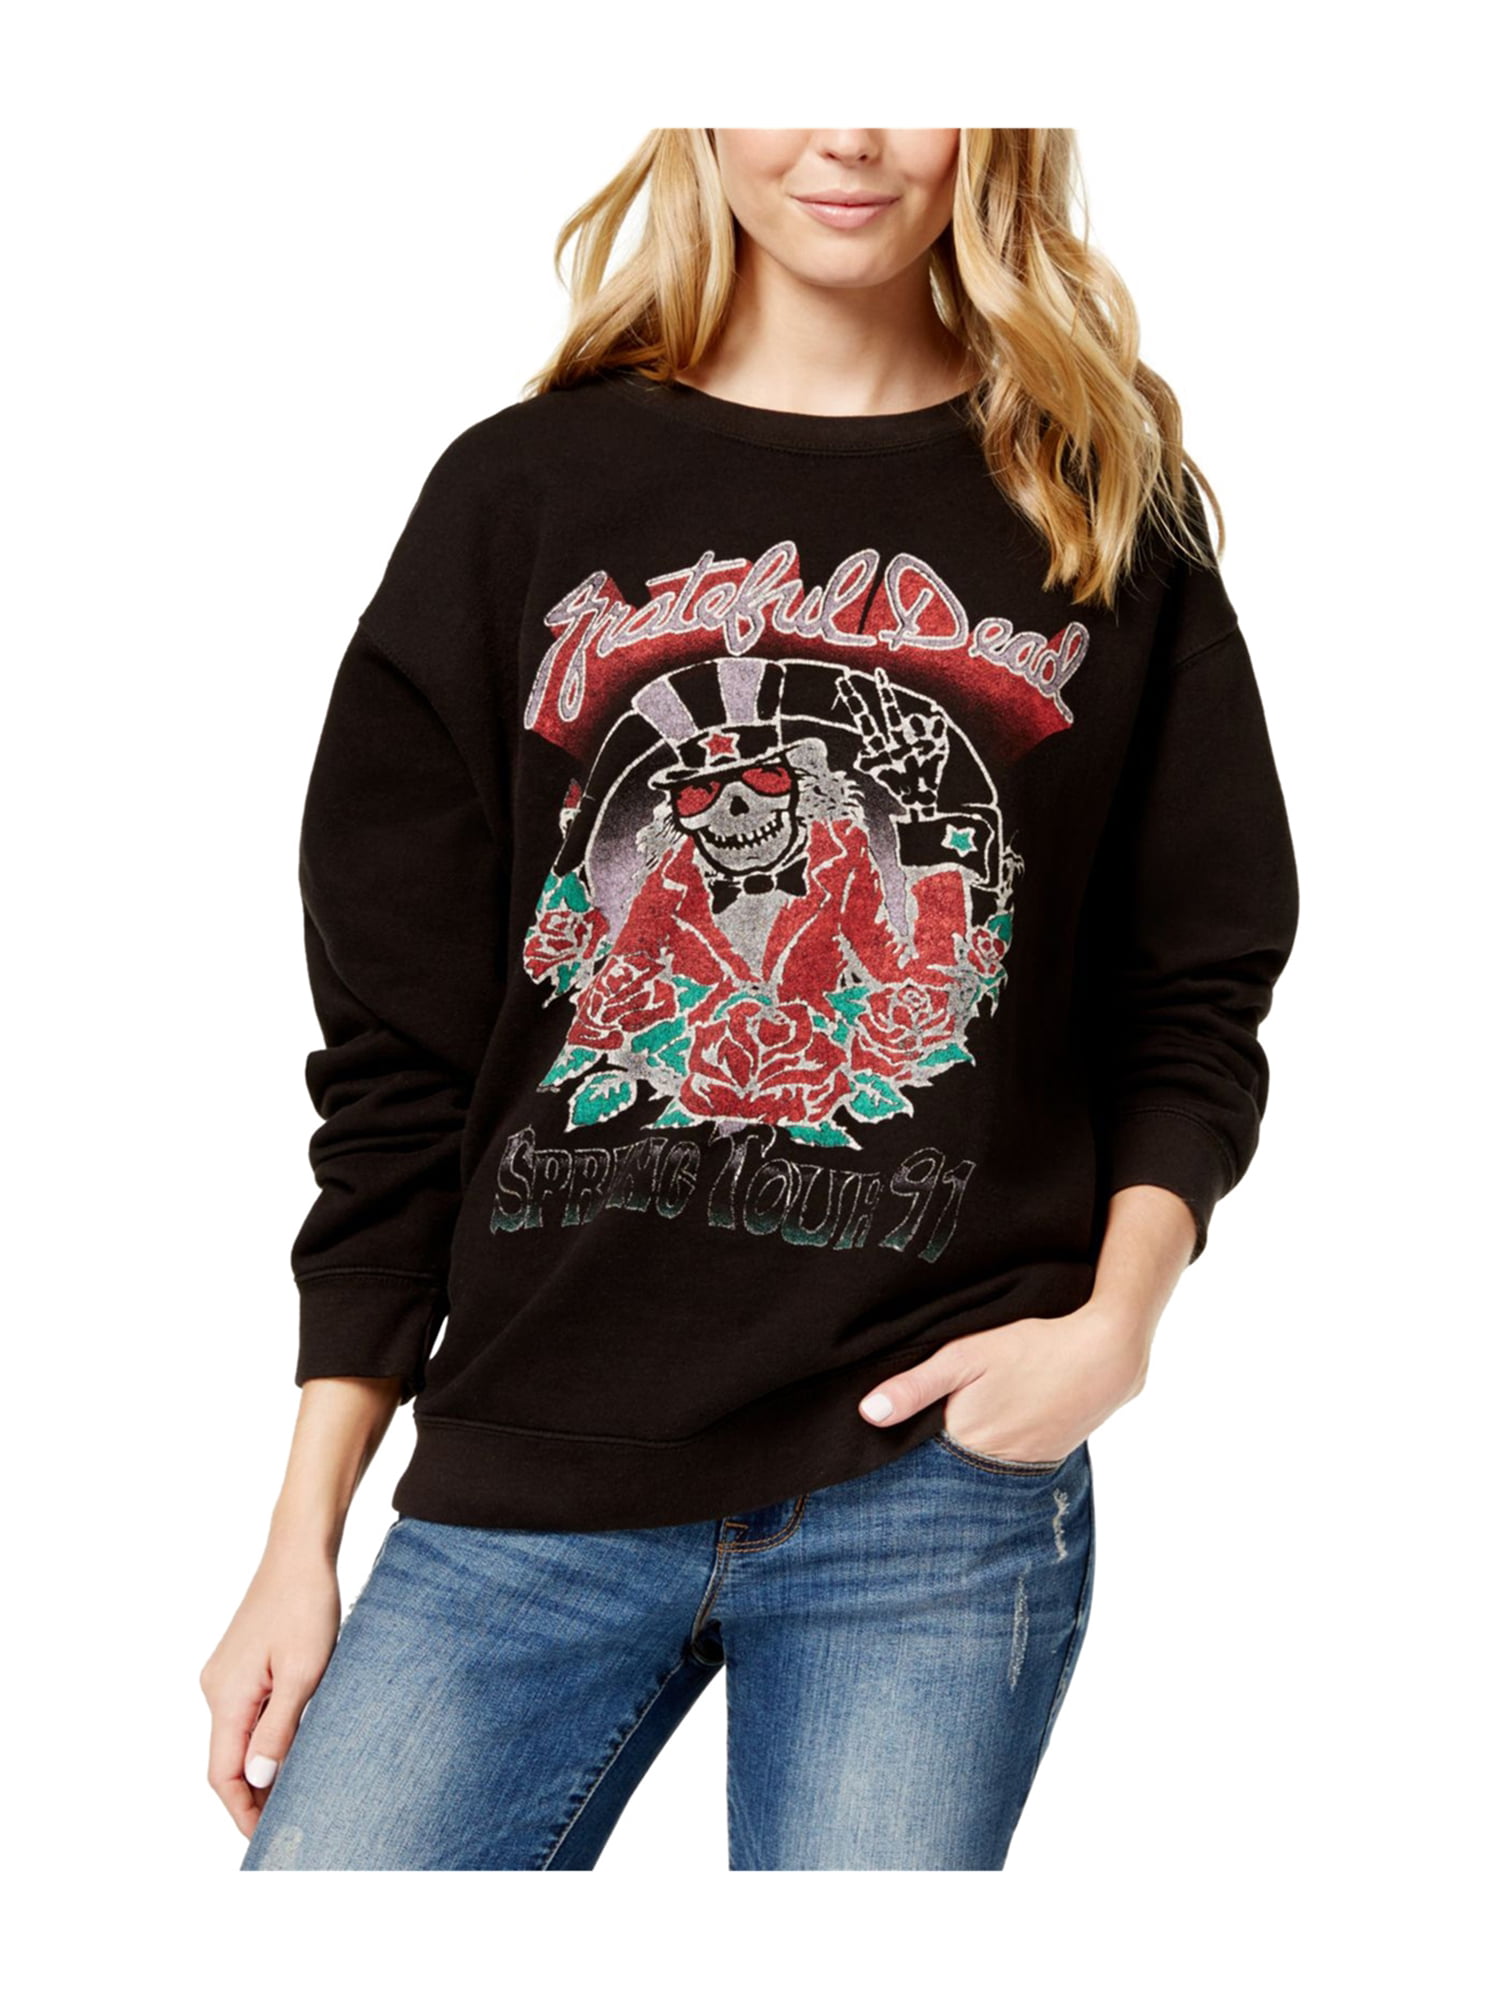 Junk Food Grateful Dead Boys Hoodie Pullover Band Music Sweatshirt